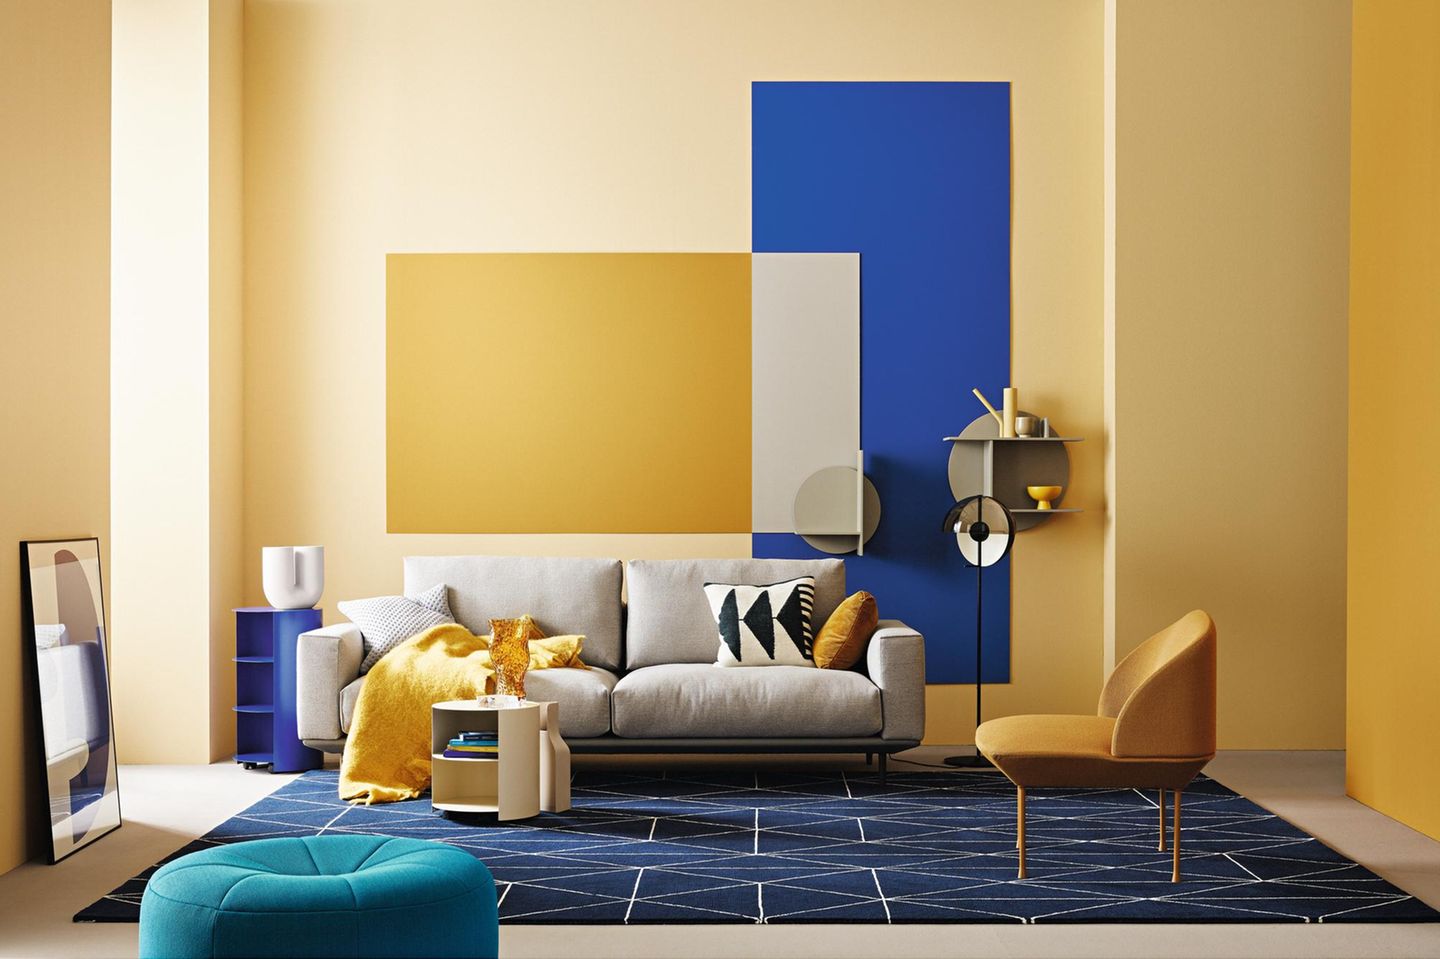 Wohnzimmer mit gelb-blau gestrichenen Wänden grauem Sofa und petrolfarbenem Pouf